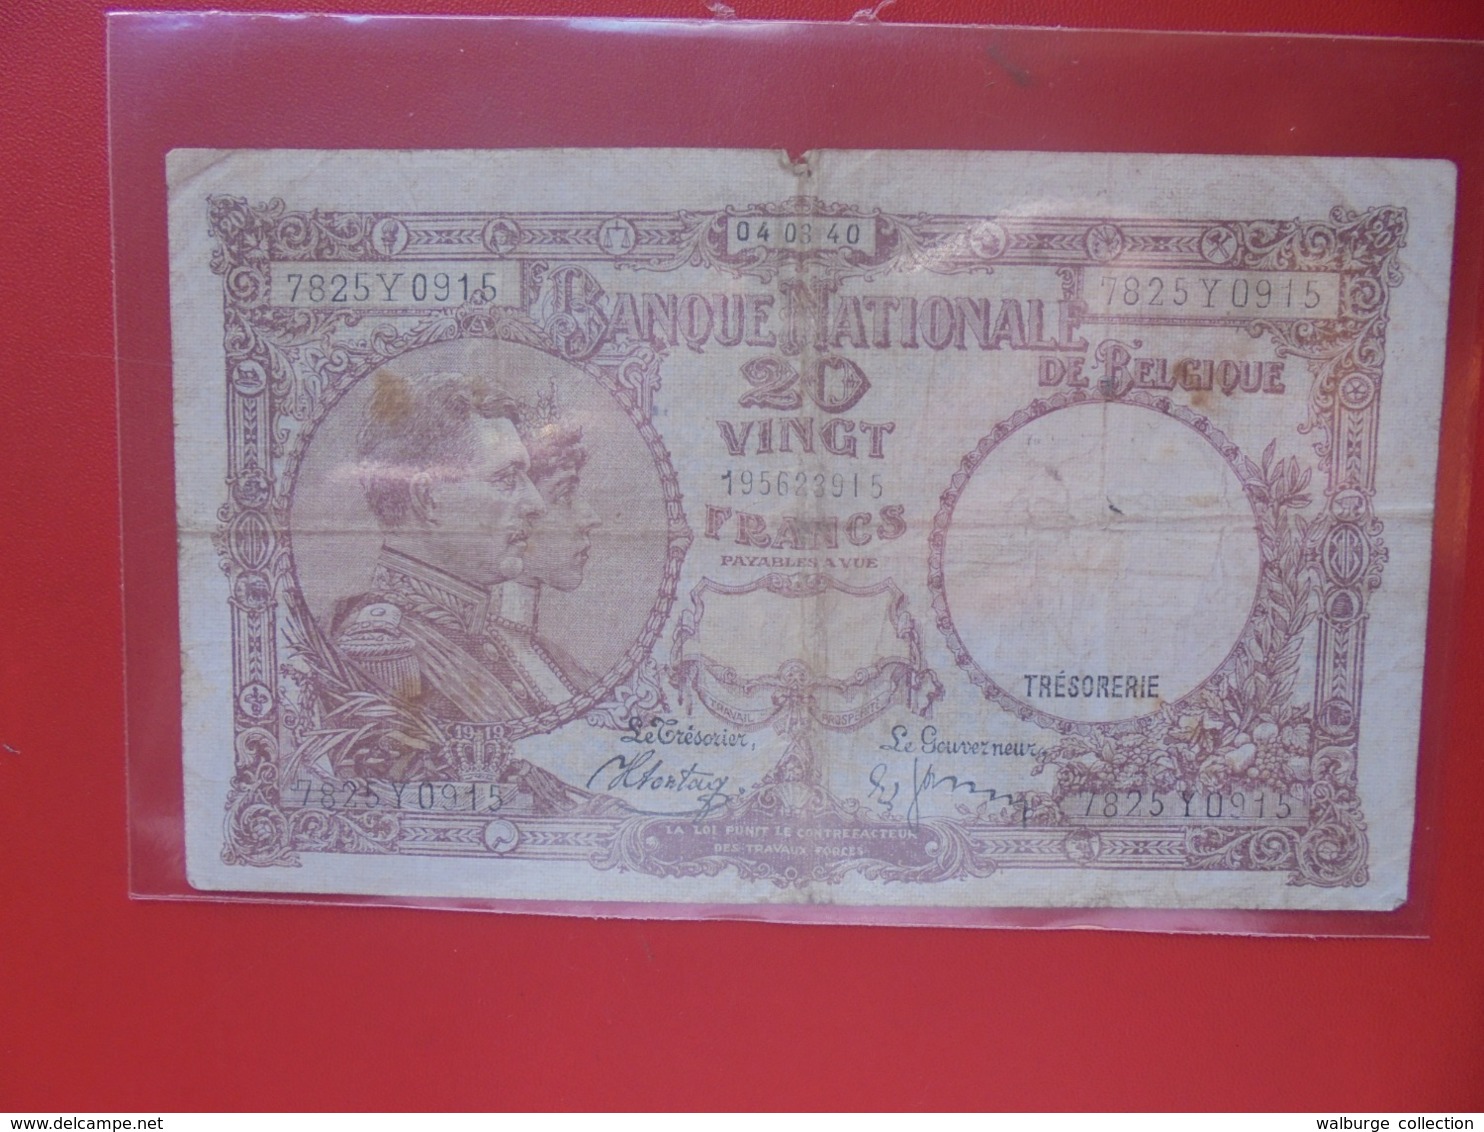 BELGIQUE 20 FRANCS 1940 CIRCULER (B.8) - 20 Francs